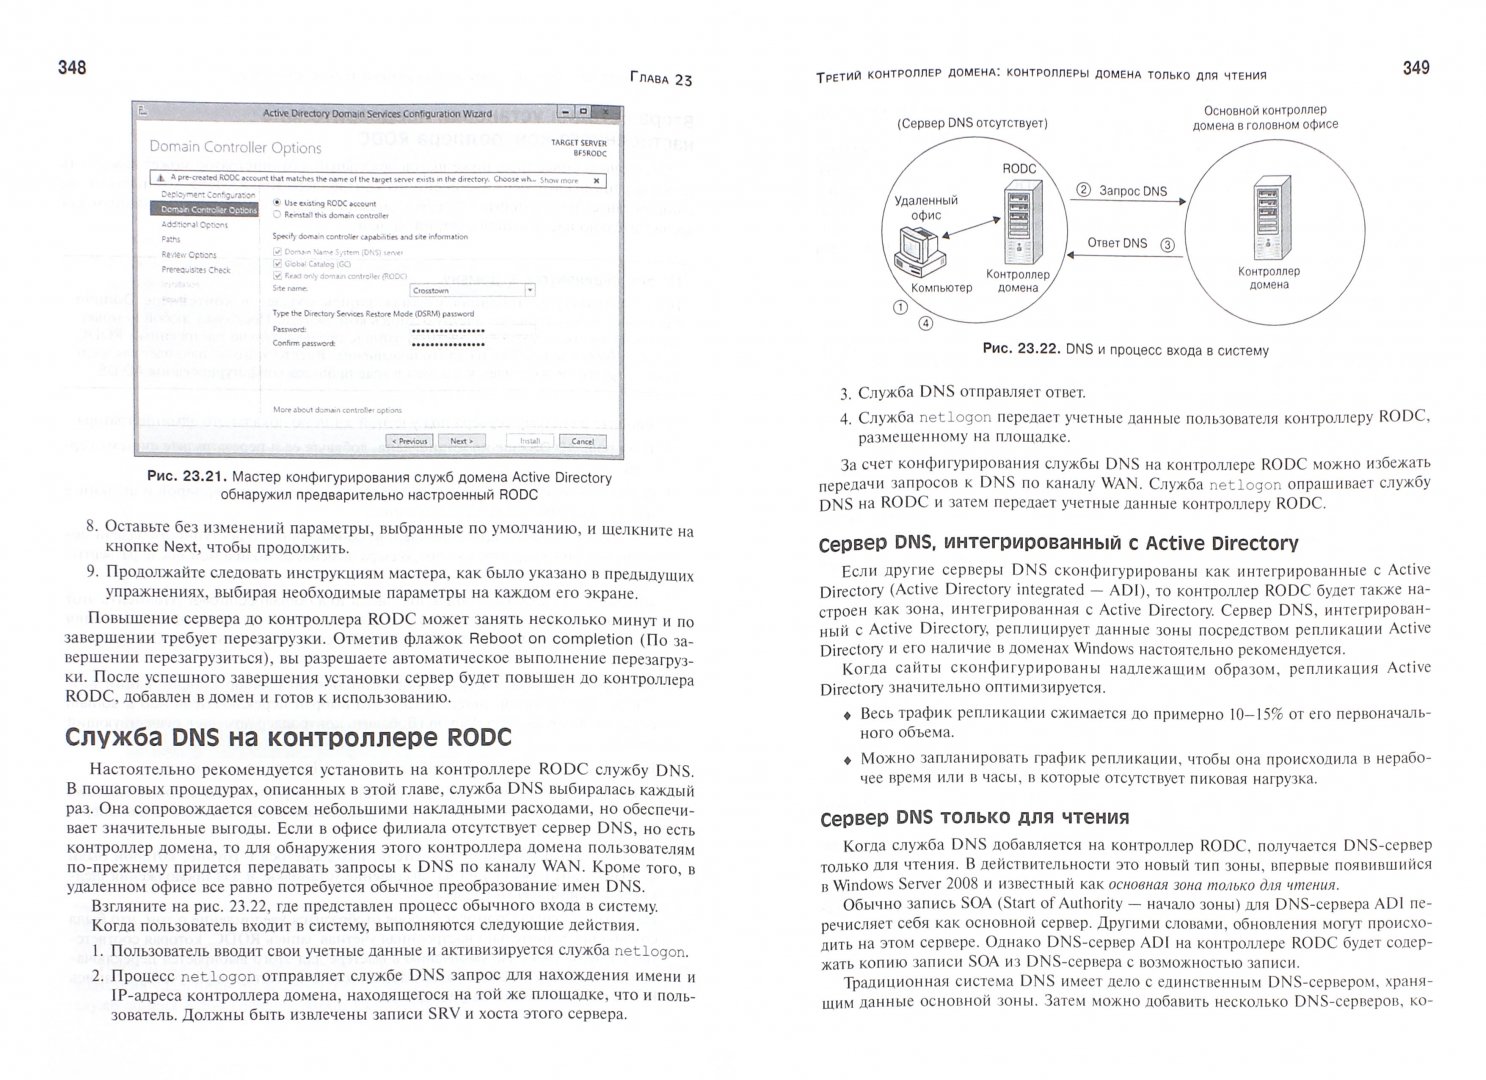 Иллюстрация 1 из 16 для Windows Server 2012 R2. Полное руководство. Том 2. Дистанционное администрирование, установка среды - Грин, Минаси, Бус, Батлер | Лабиринт - книги. Источник: Лабиринт